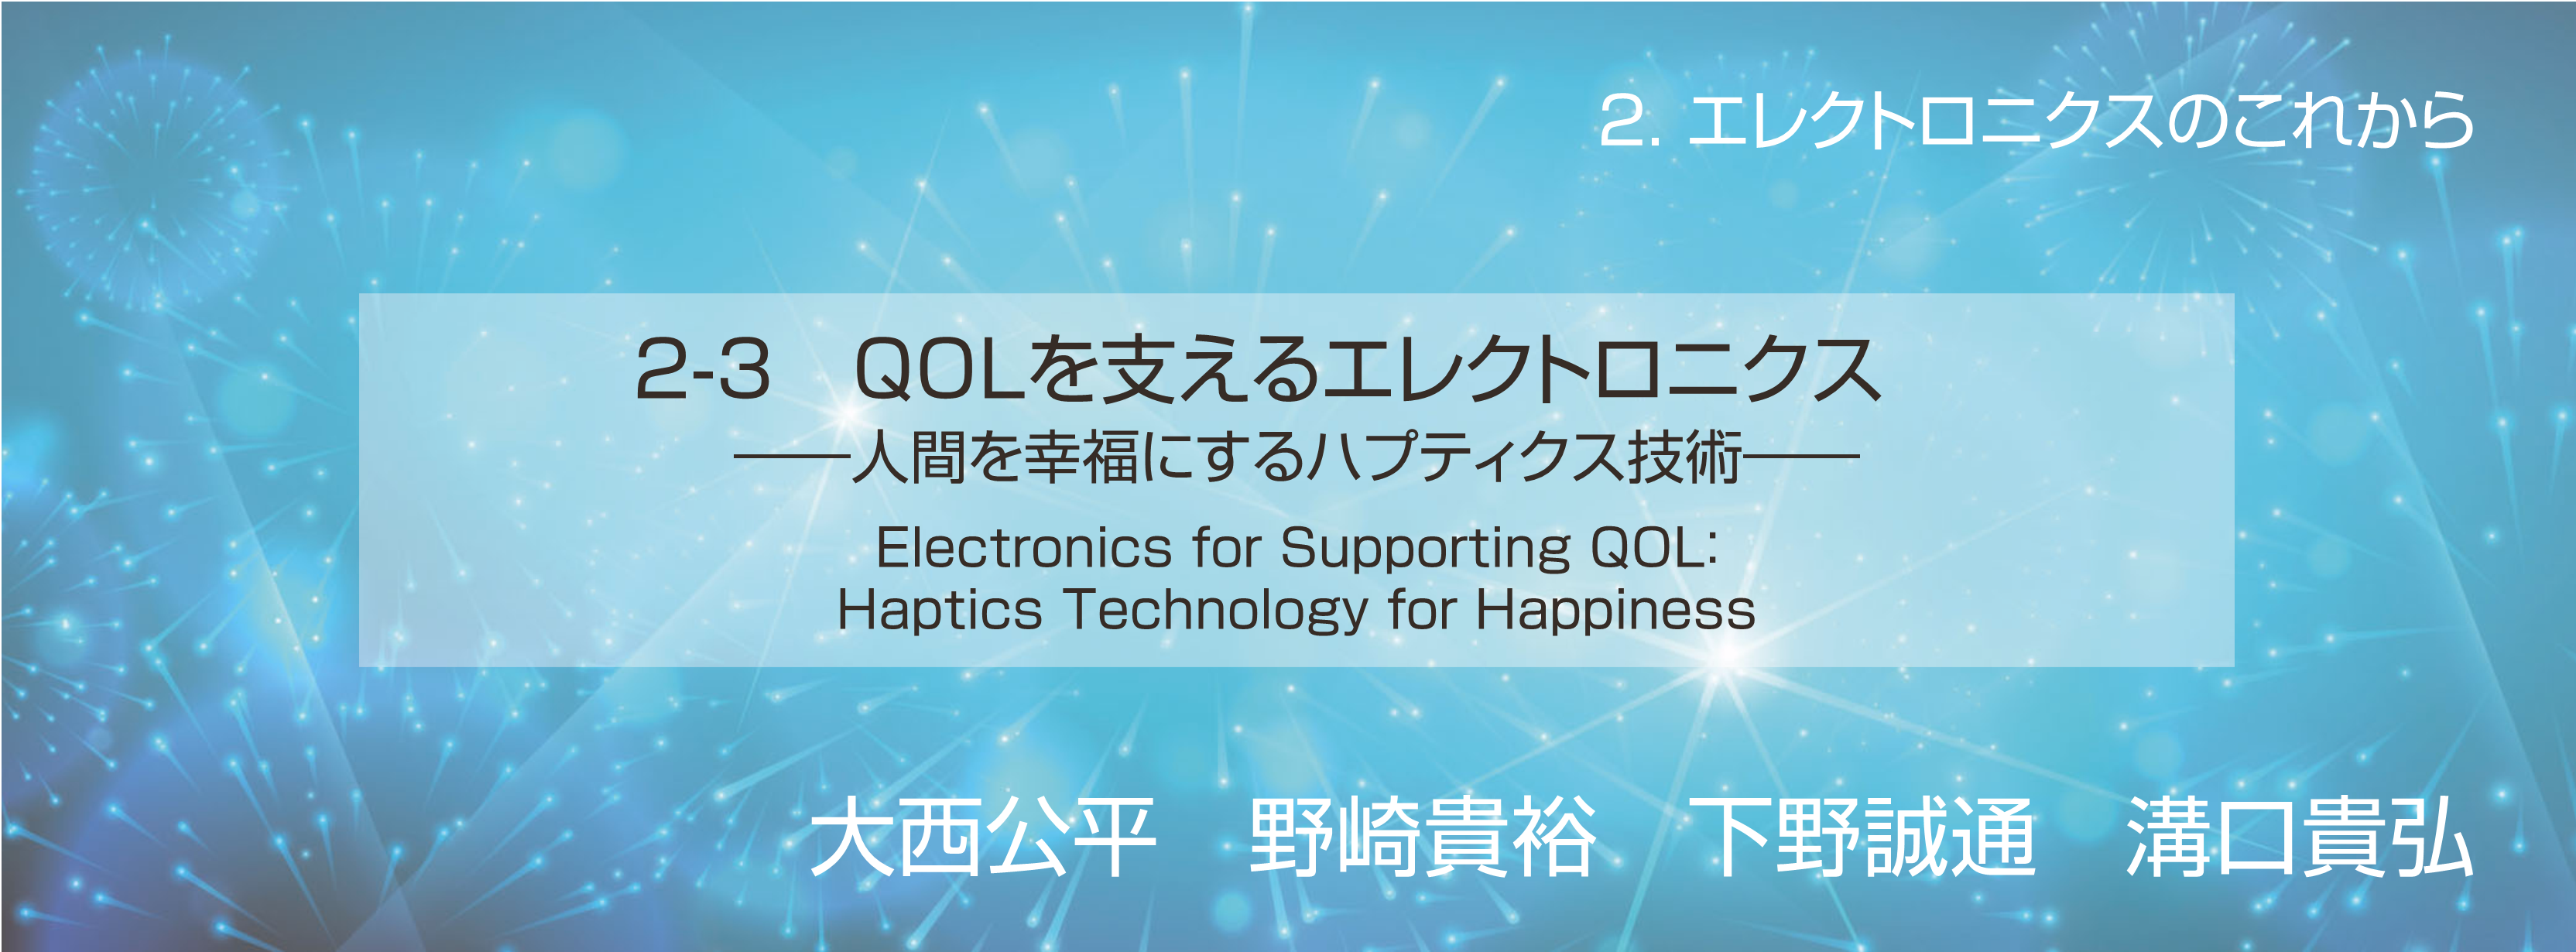 記念特集 2-3 QOL を支えるエレクトロニクス──人間を幸福にするハプティクス技術──1．は　じ　め　に2．ハプティクス技術とは3．ハプティクス技術の実装例4．お　わ　り　に文　　　　　献